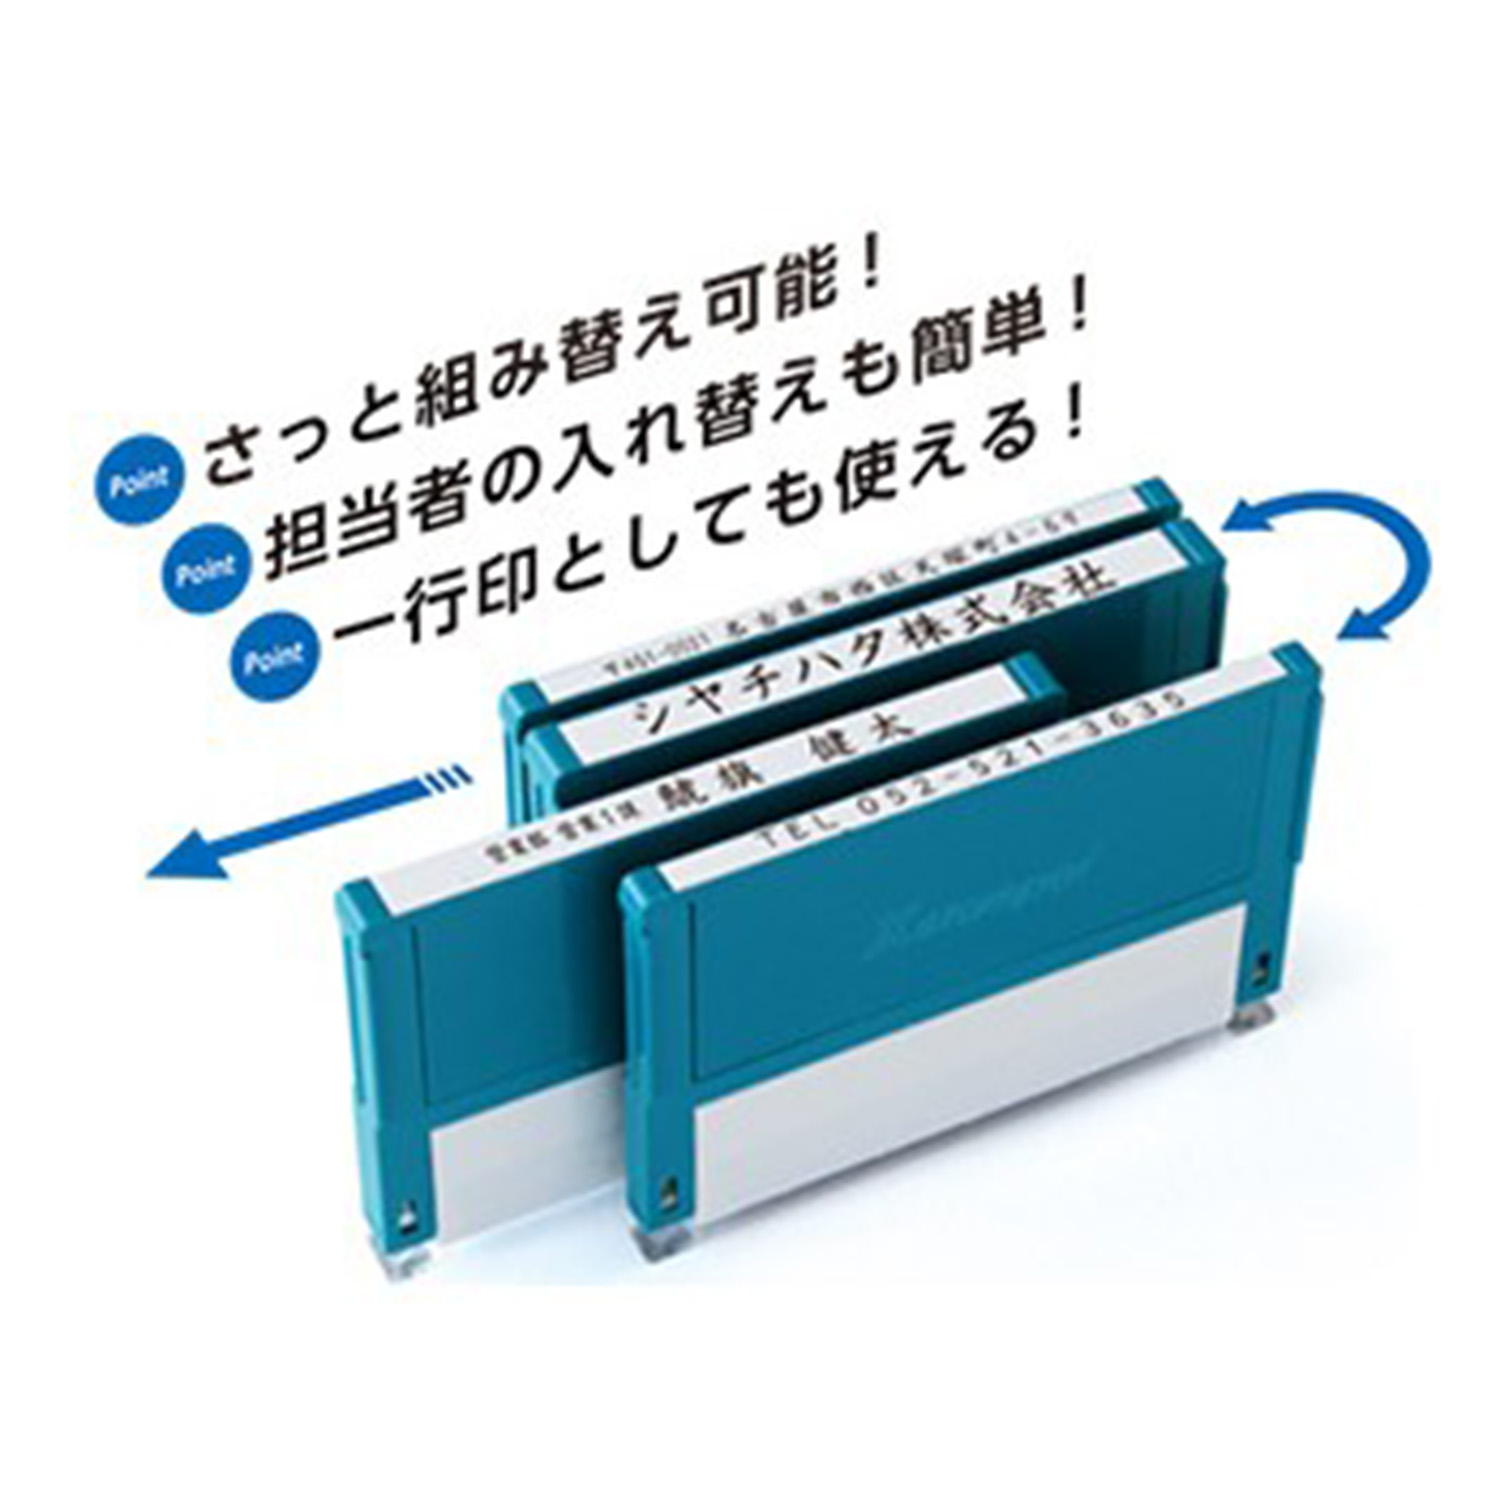 インボイス制度対応スタンプ・浸透印　一行印 (5×59mm) ヨコ「NET Asahi」